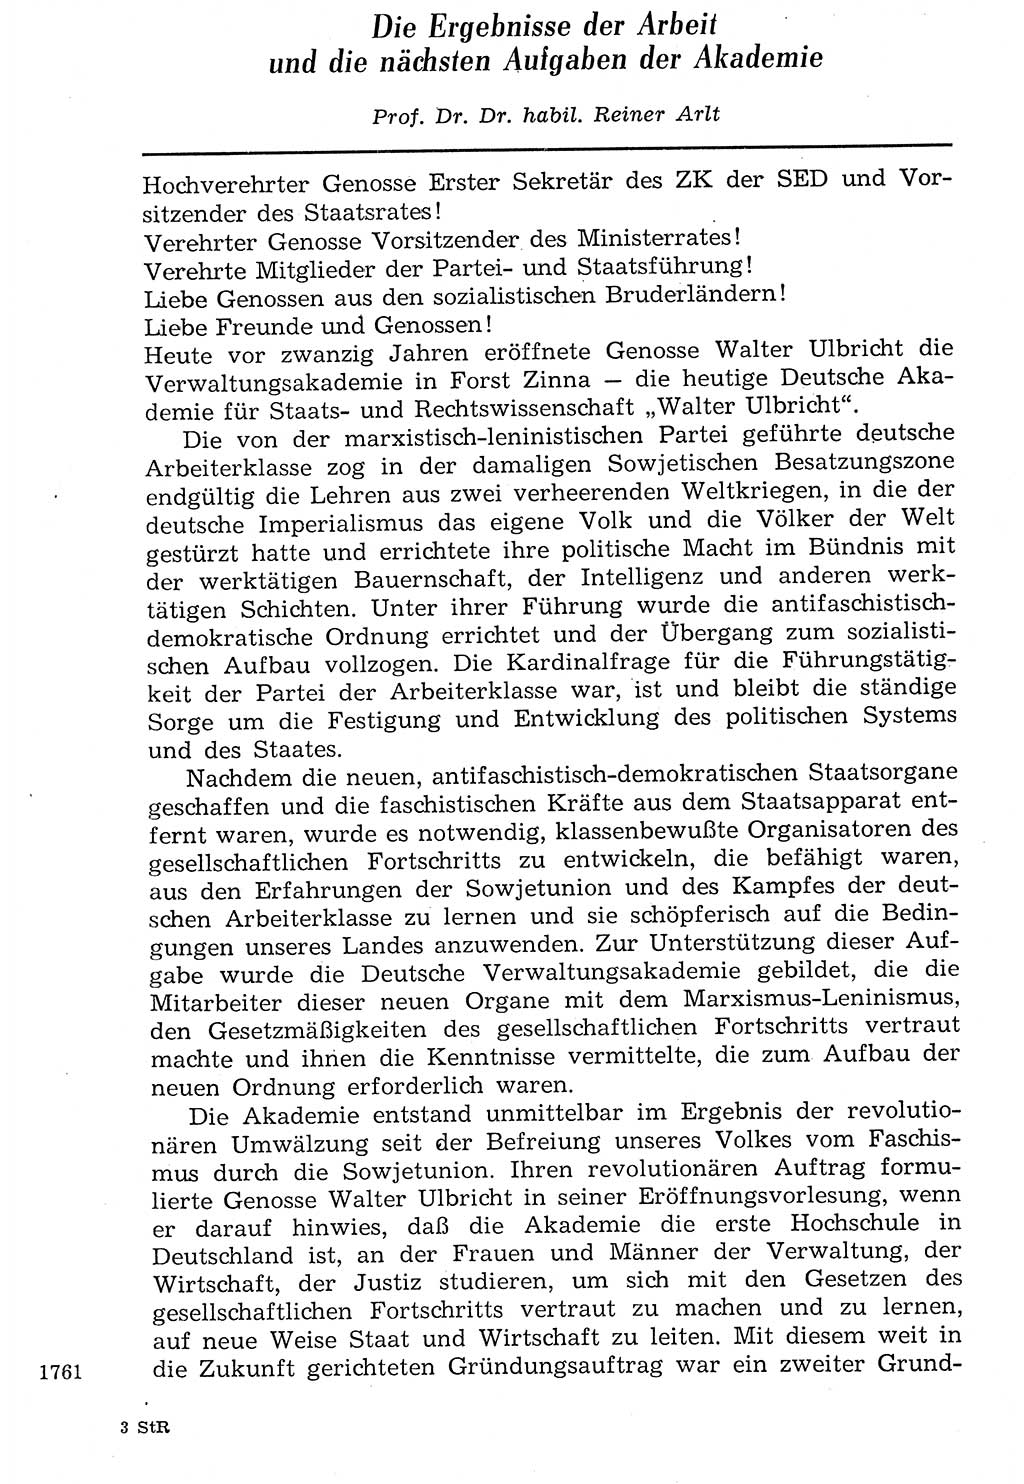 Staat und Recht (StuR), 17. Jahrgang [Deutsche Demokratische Republik (DDR)] 1968, Seite 1761 (StuR DDR 1968, S. 1761)